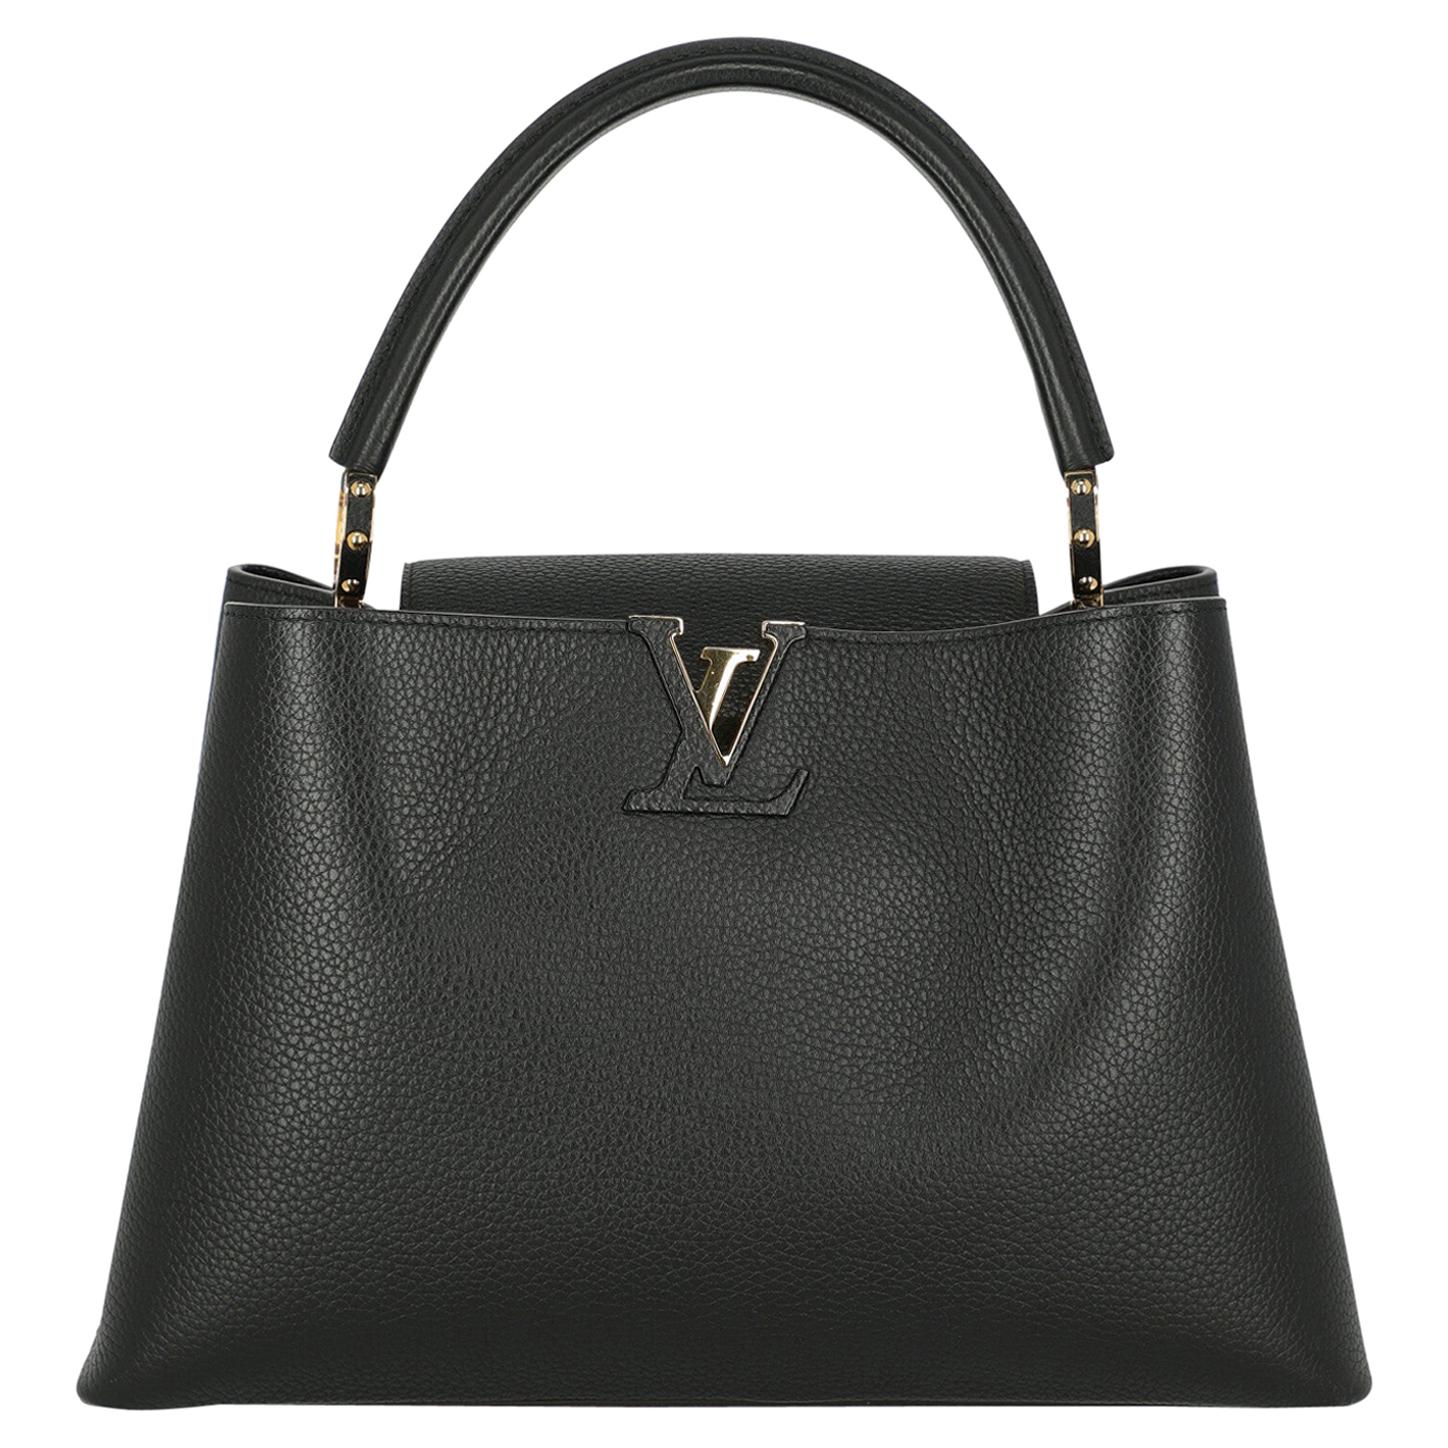 Louis Vuitton Women's Handbag Capucines Black Leather For Sale